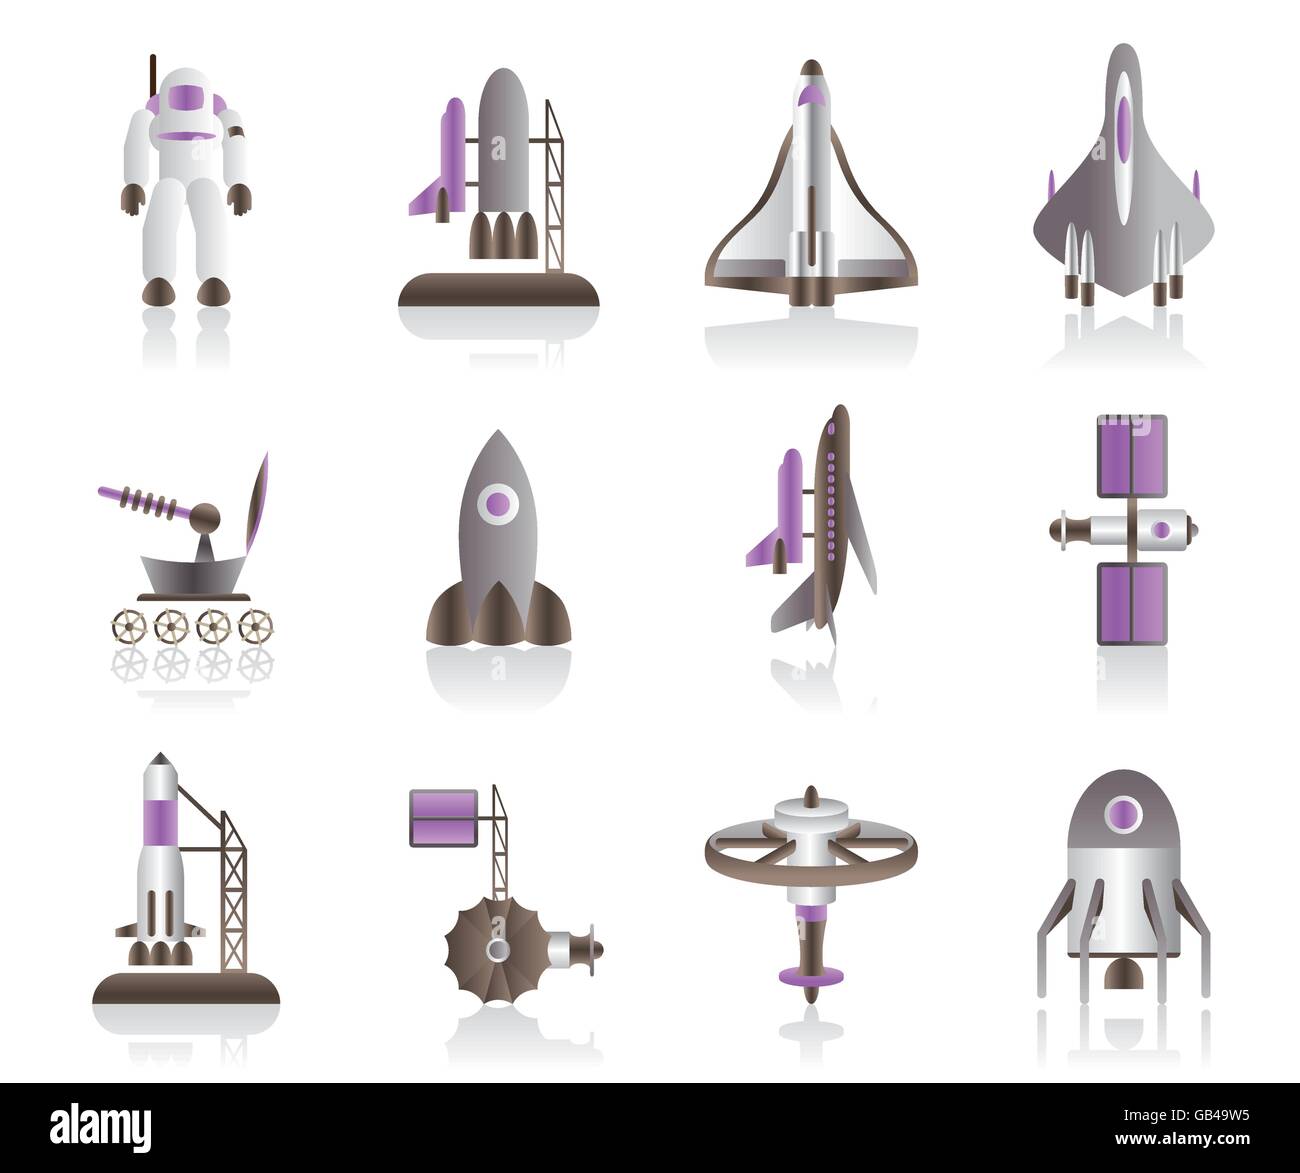 Veicolo spaziale, navette spaziali e astronauta - illustrazione vettoriale Illustrazione Vettoriale